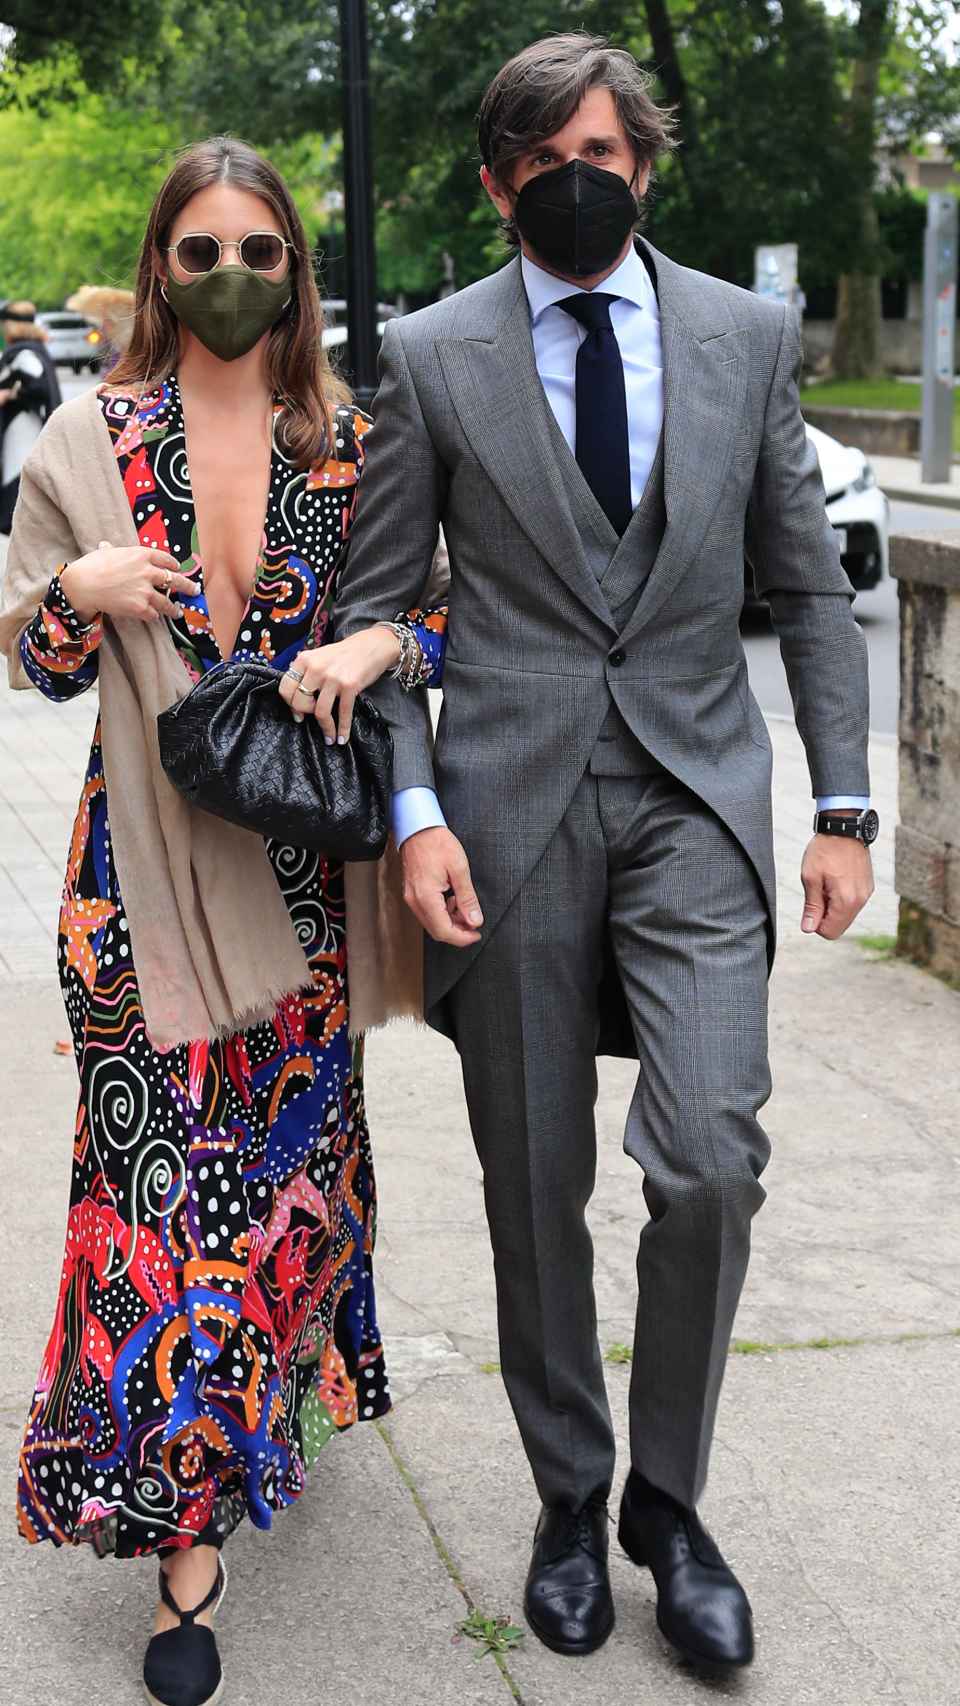 Álvaro Falcó e Isabelle Junot en la boda de Pedro Bravo y Carlota Pérez Pla, en junio de 2021.